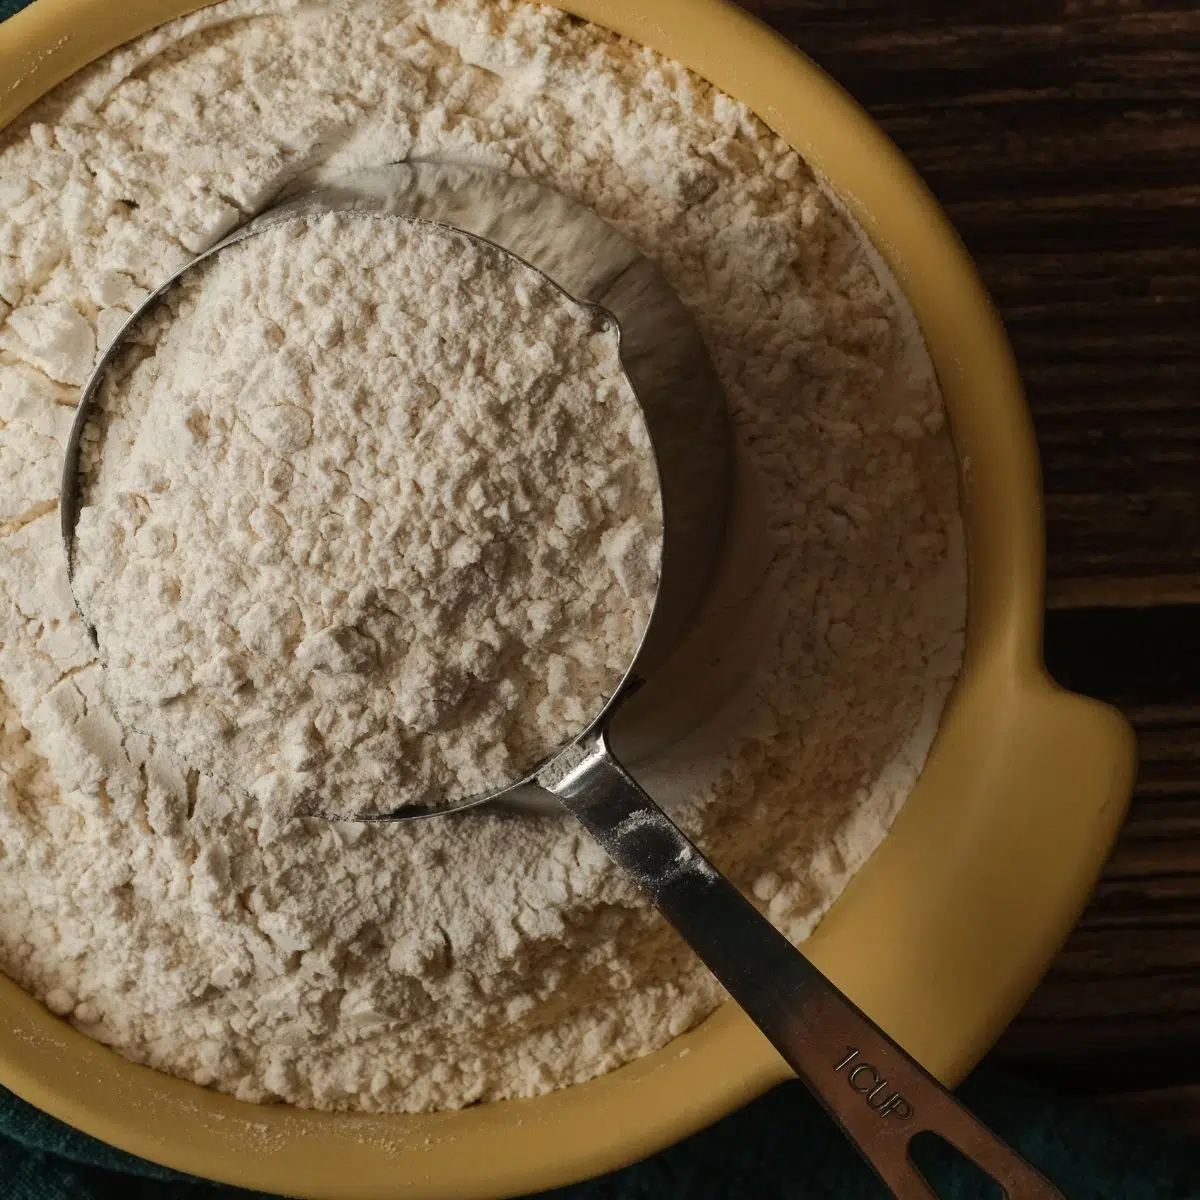 La migliore immagine sostitutiva della farina di mandorle con farina di mandorle in una ciotola.